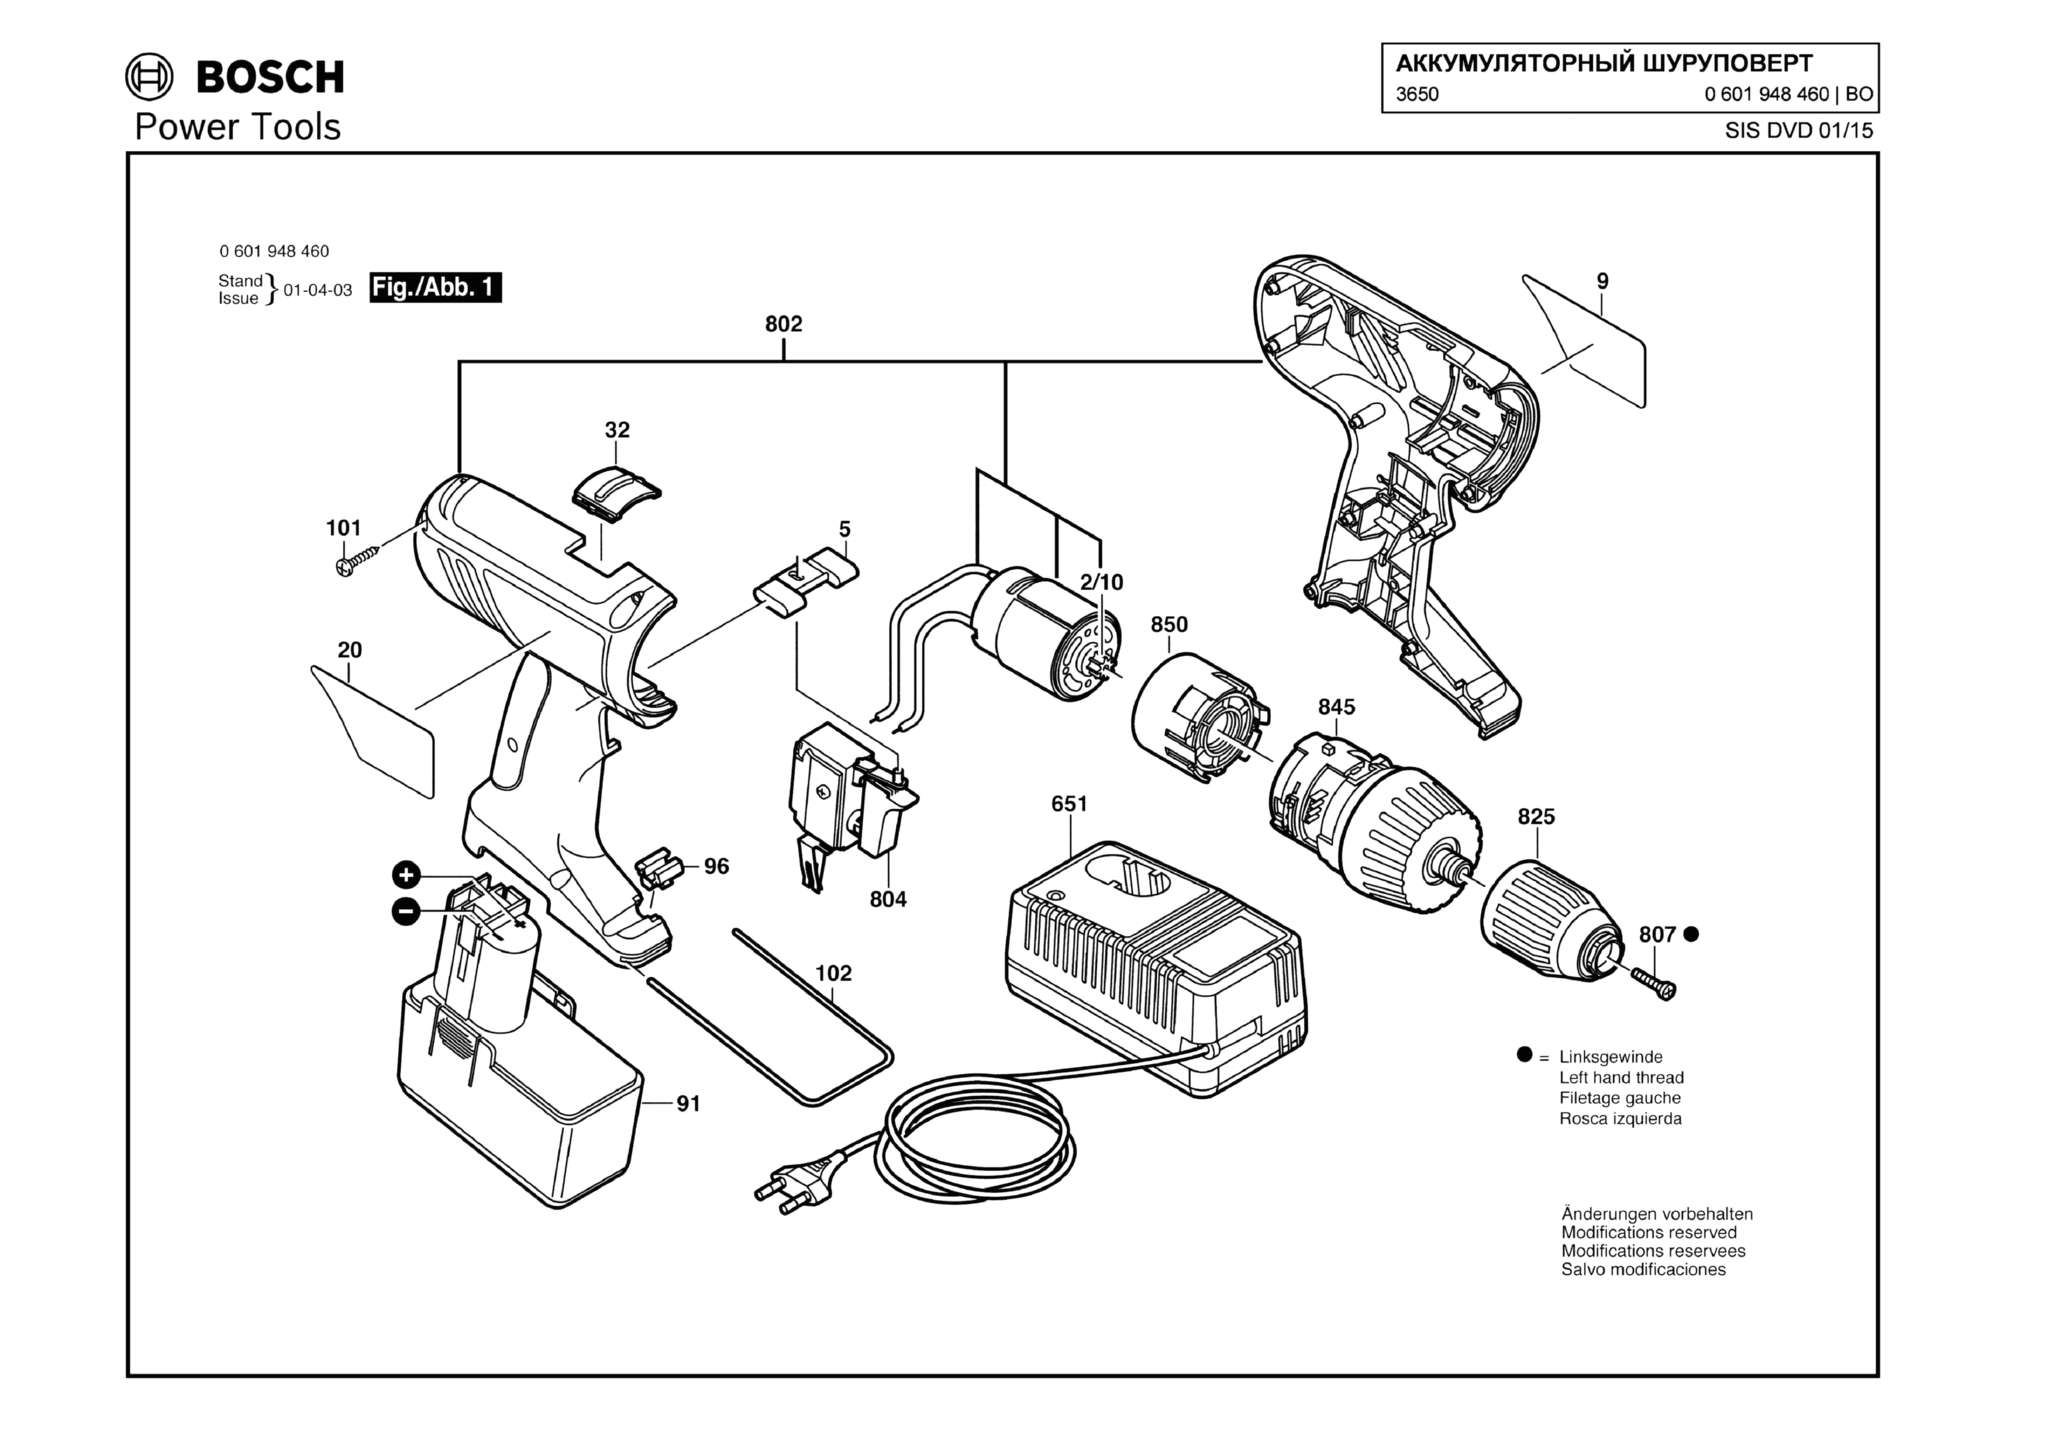 Запчасти, схема и деталировка Bosch 3650 (ТИП 0601948460)